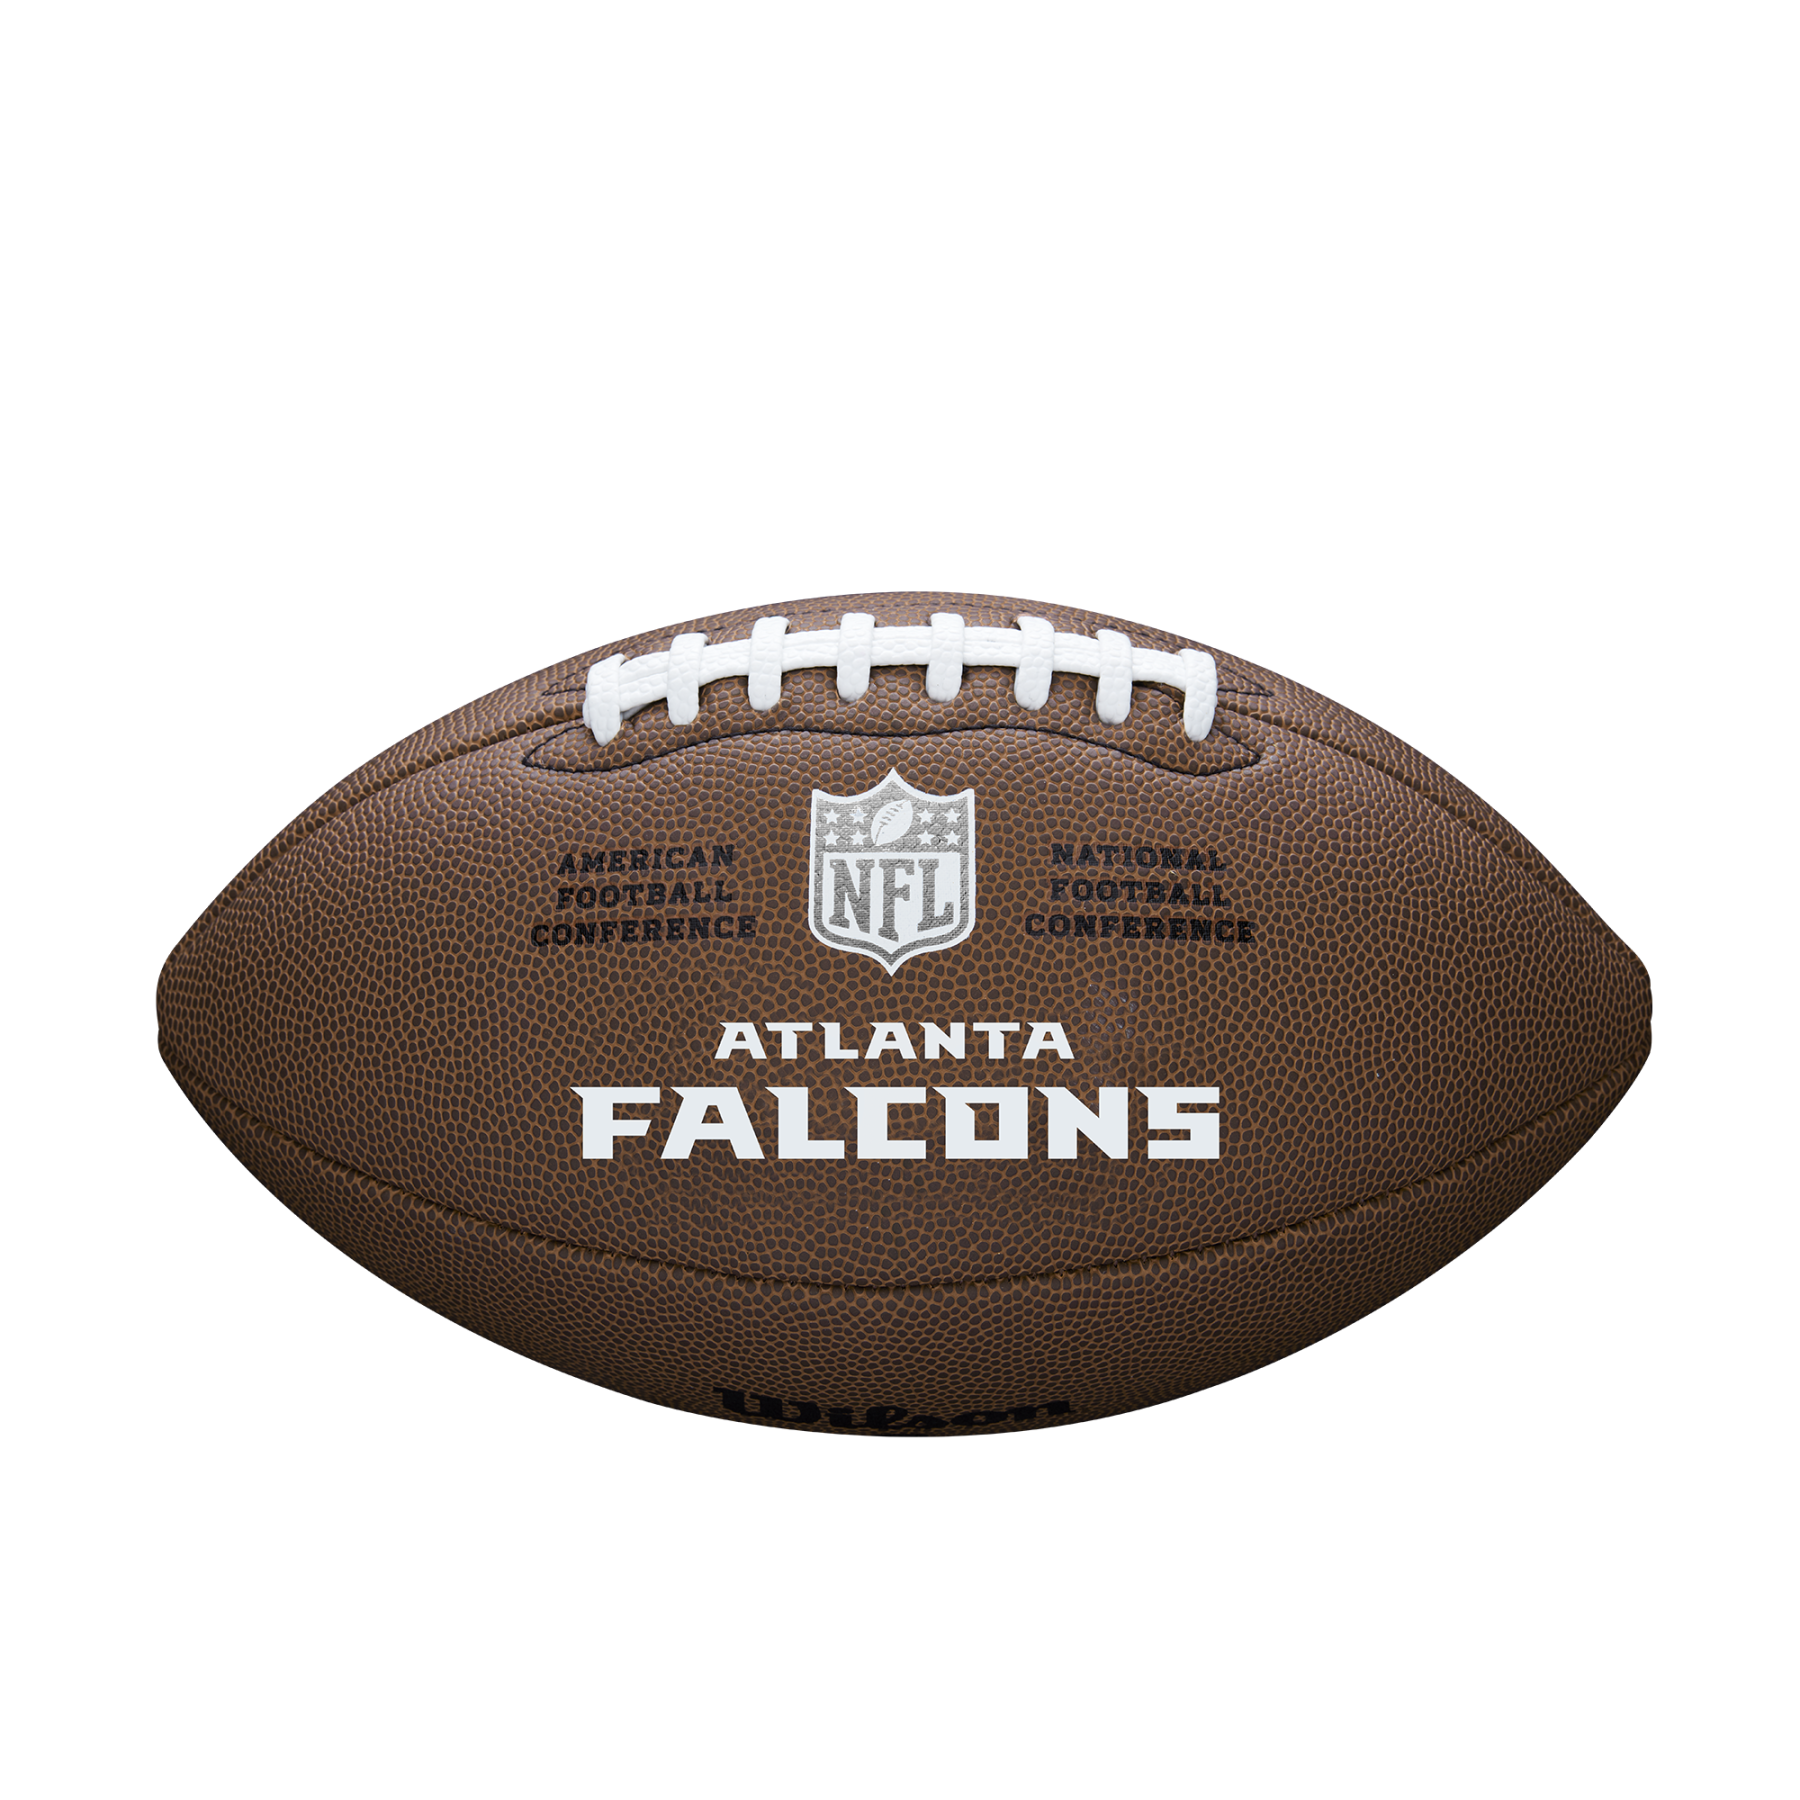 Bola Wilson Falcons NFL com licença